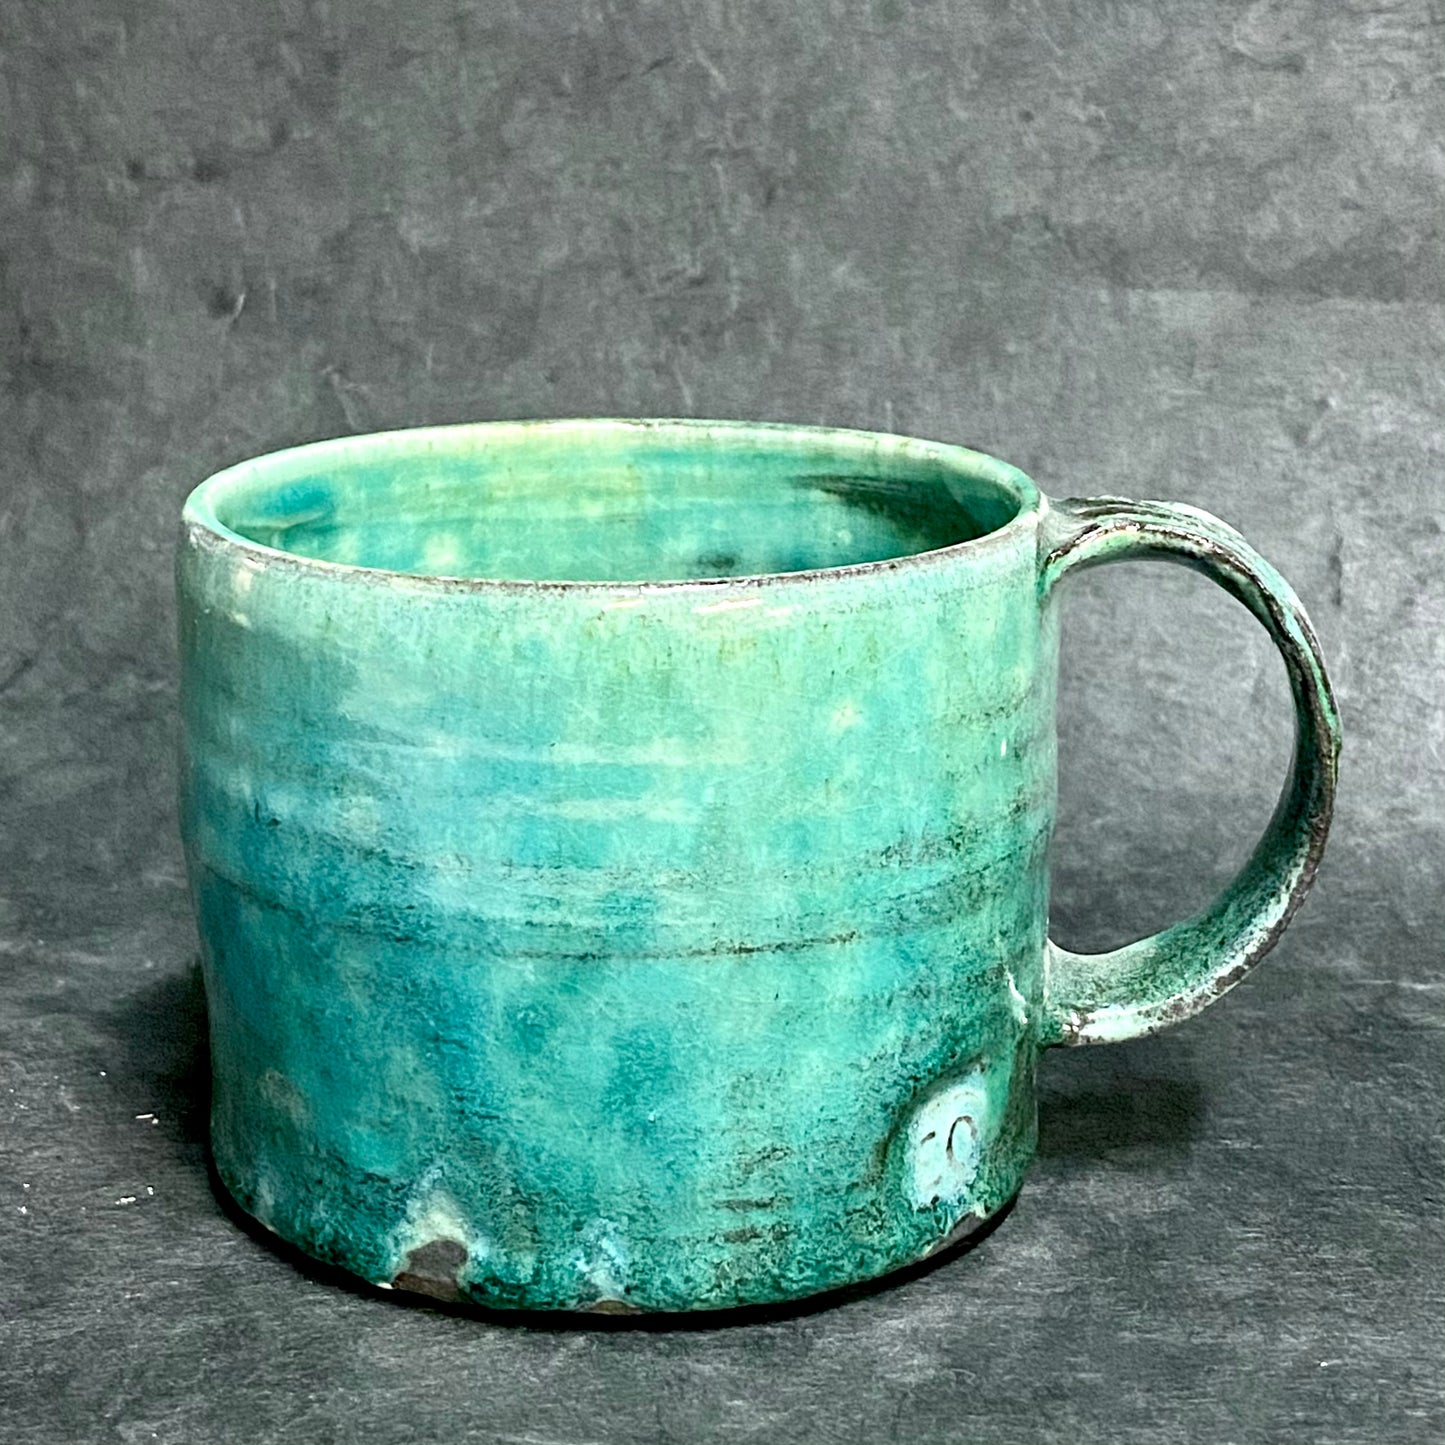 Ocean mug